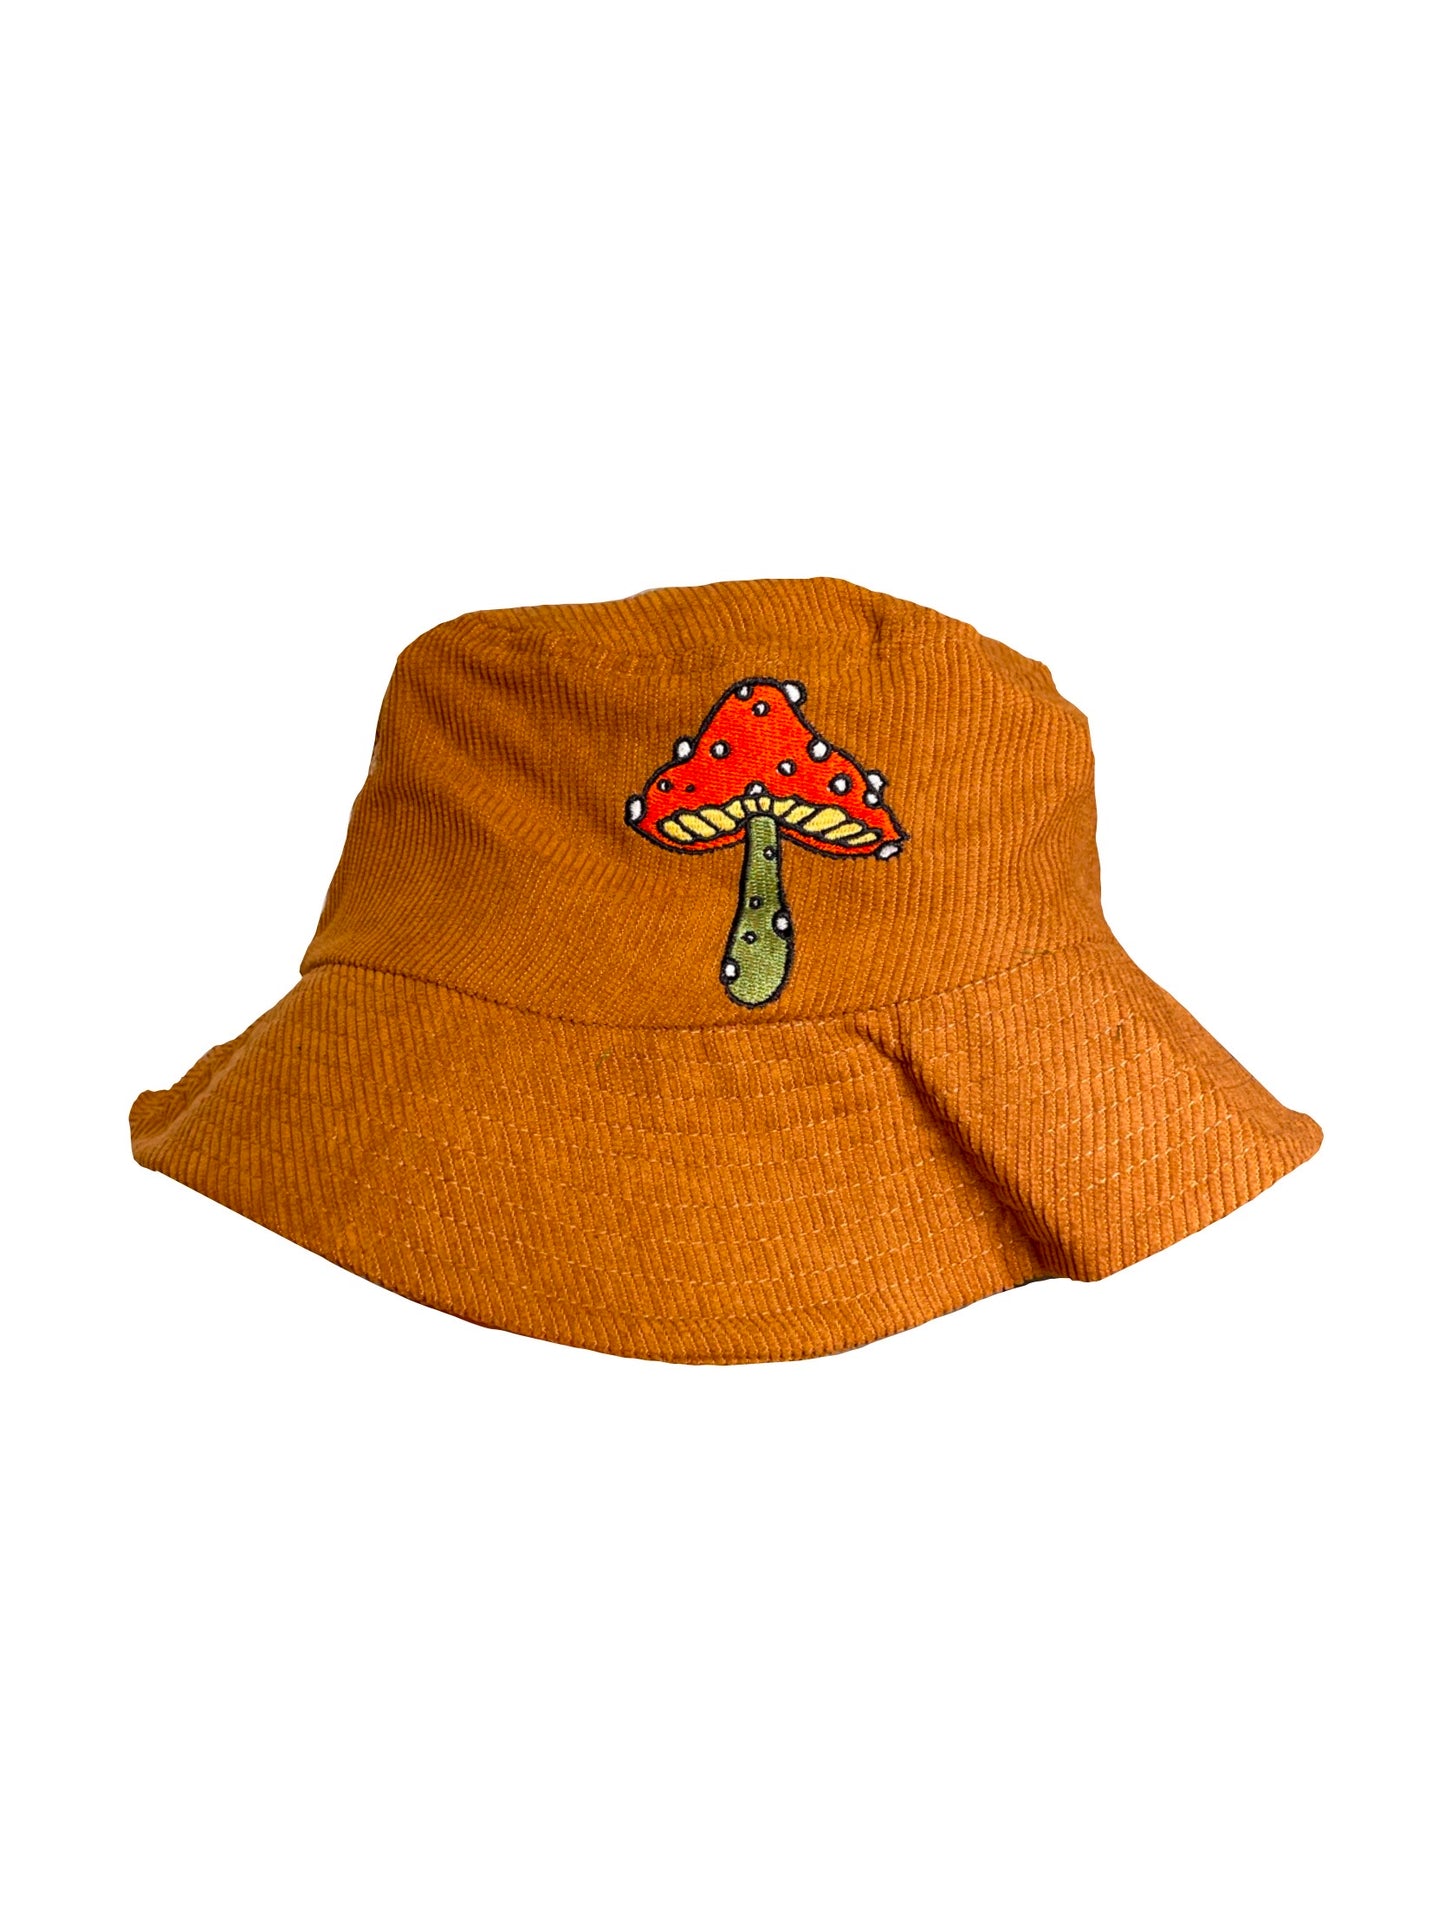 Brown & Red Corduroy Mushroom Bucket Hat